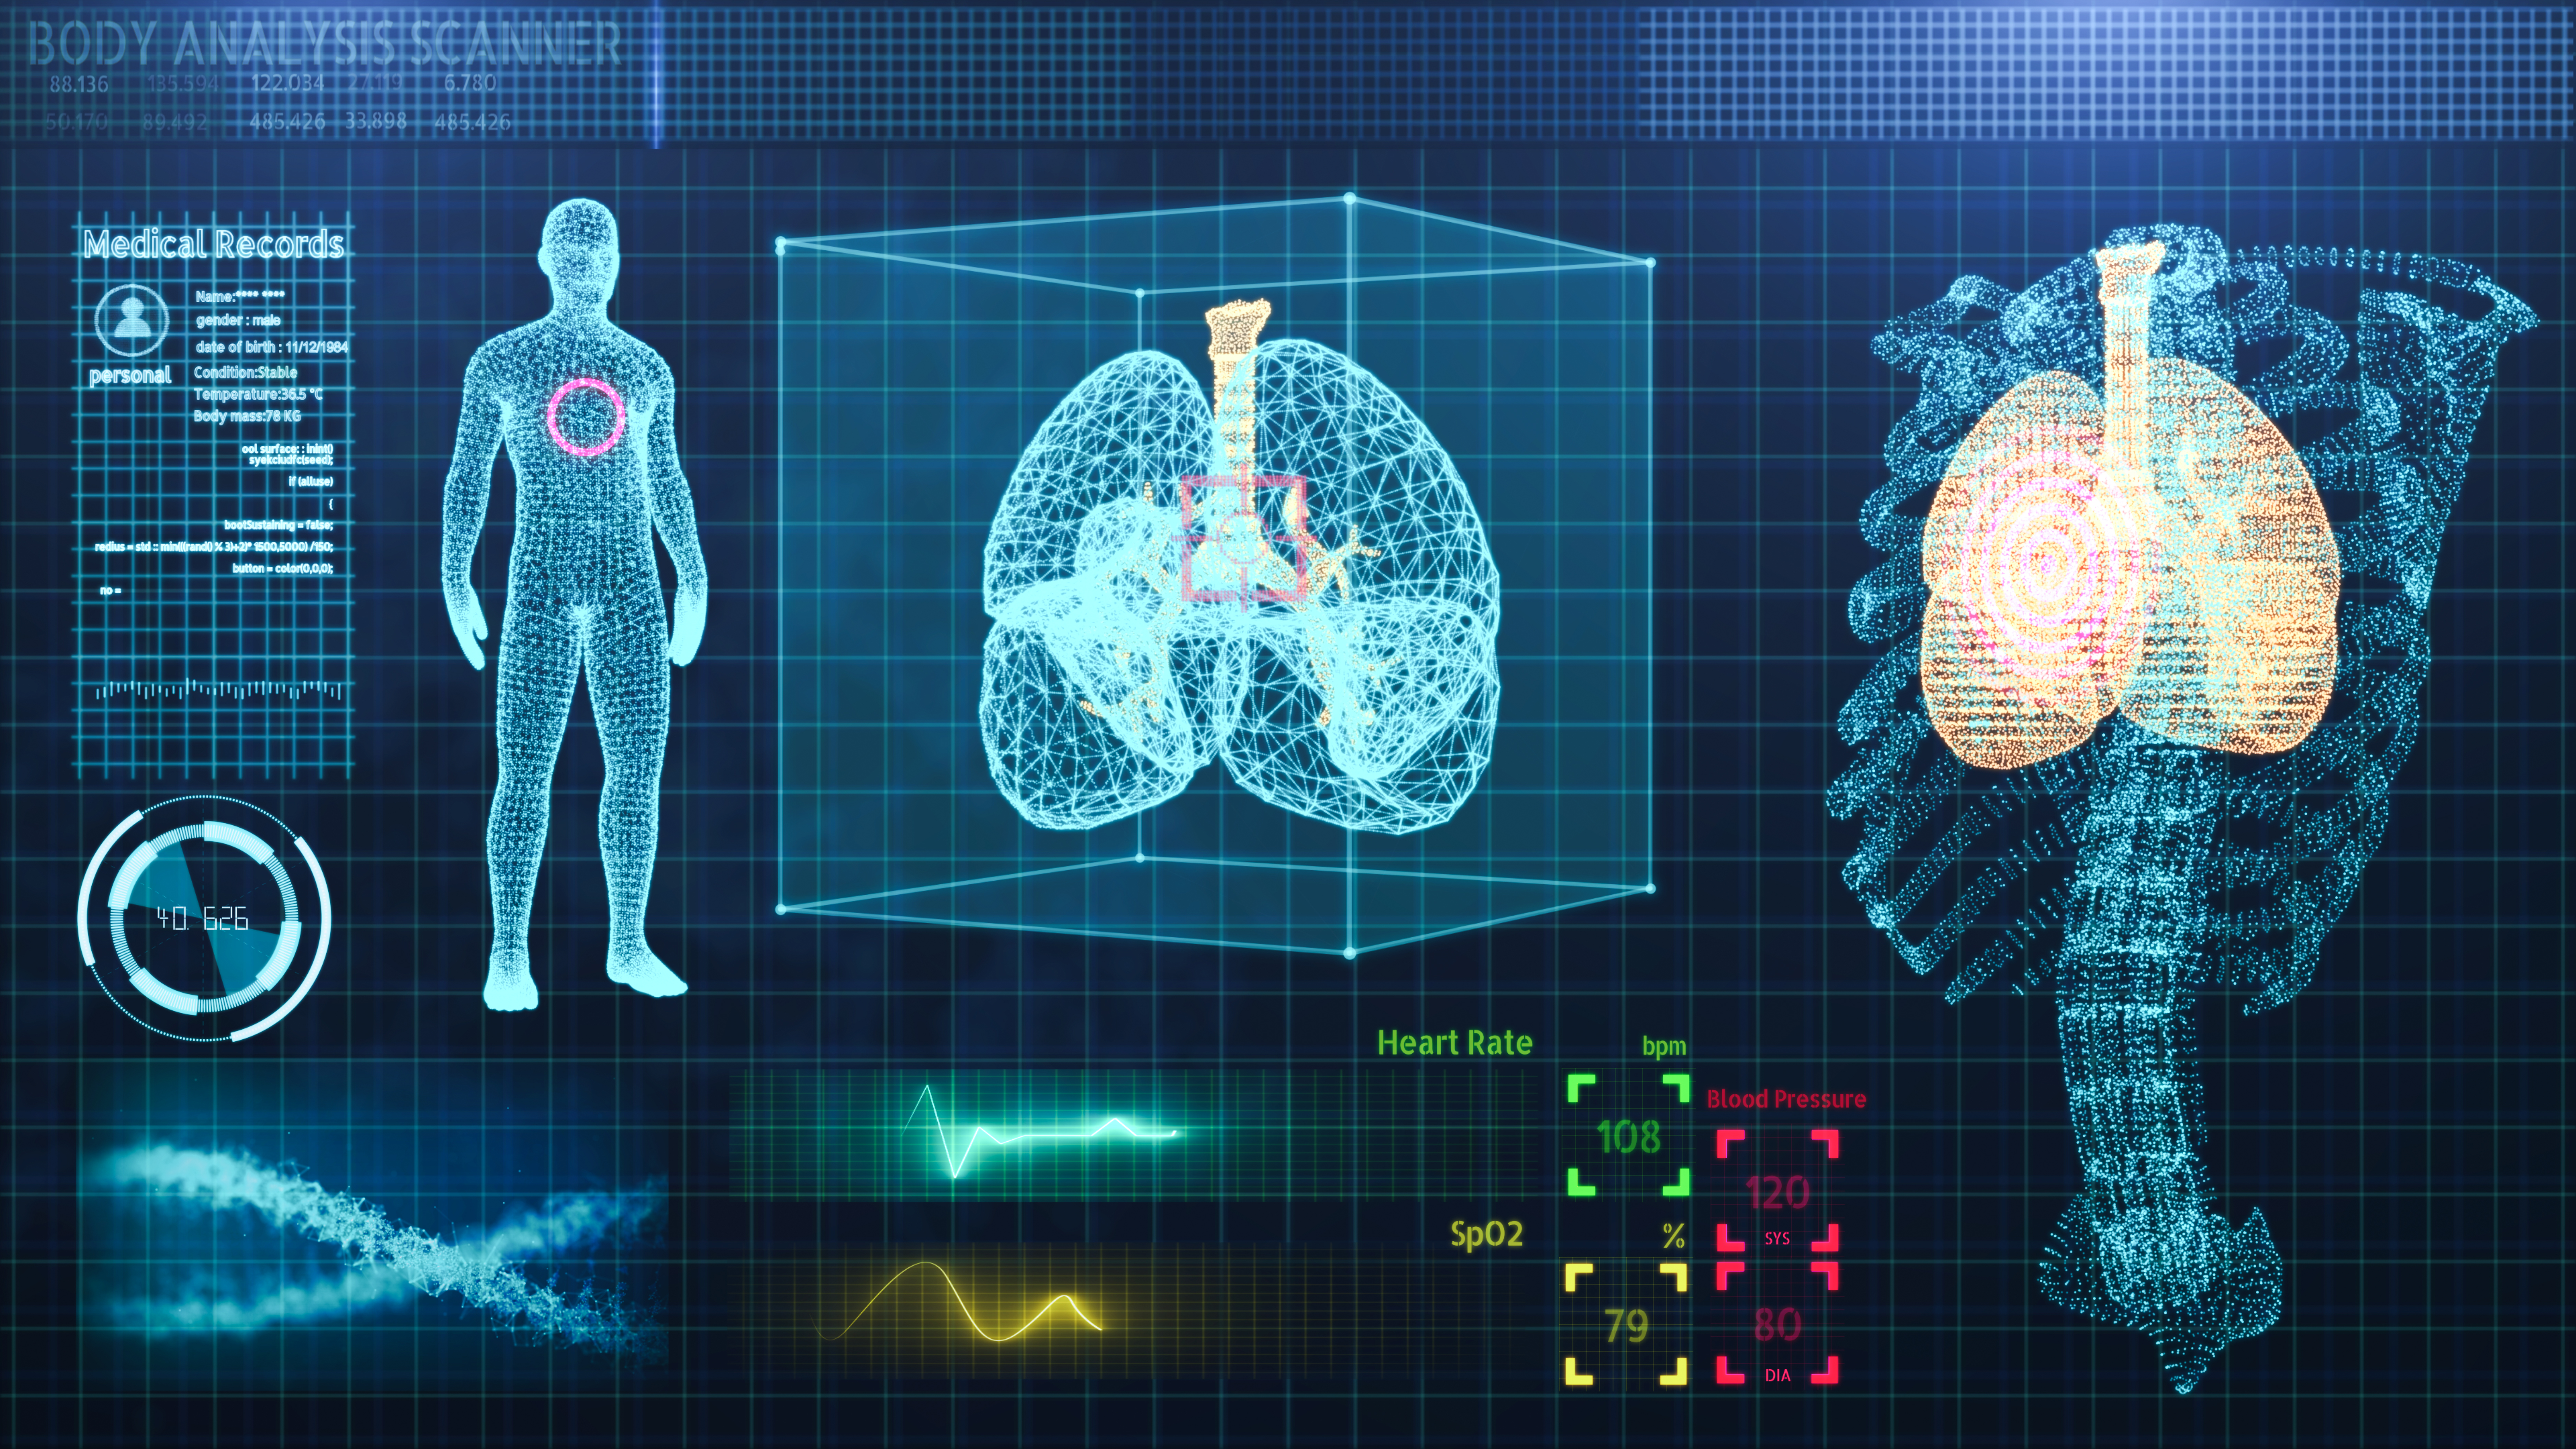 La inteligencia artificial se utiliza para interpretar imágenes: radiografías, histología y fondos ópticos / Getty